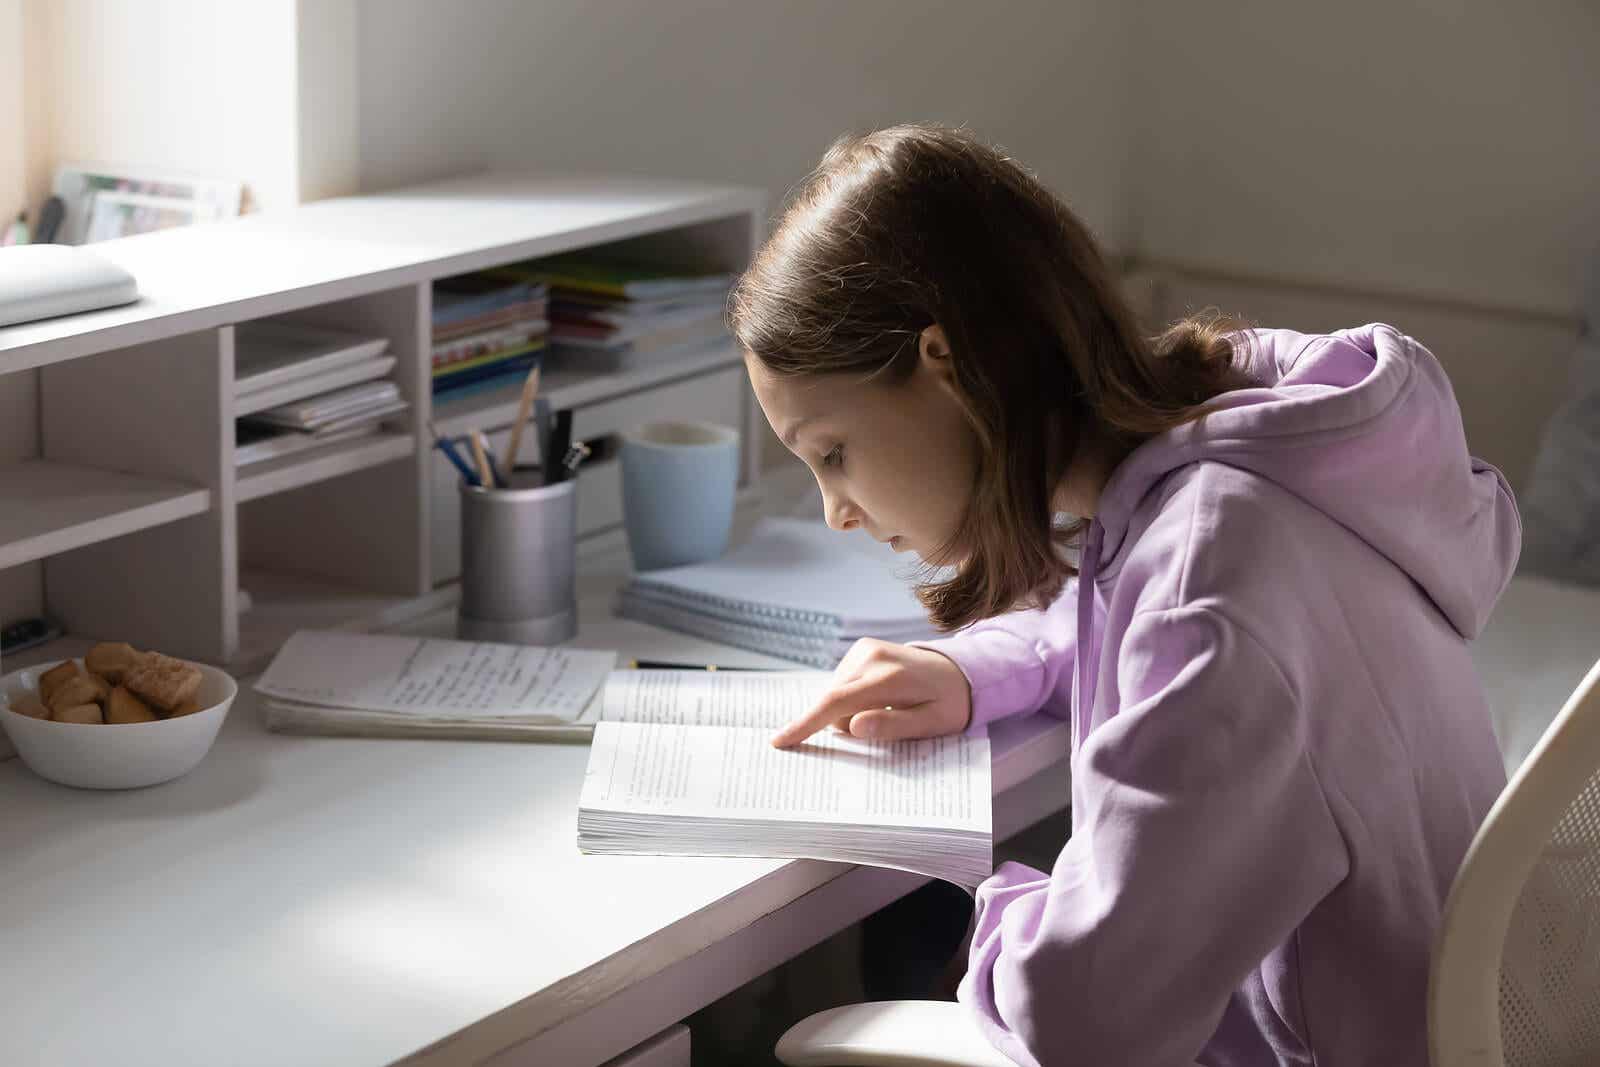 Dorastająca dziewczyna ucząca się przy biurku w swoim pokoju.